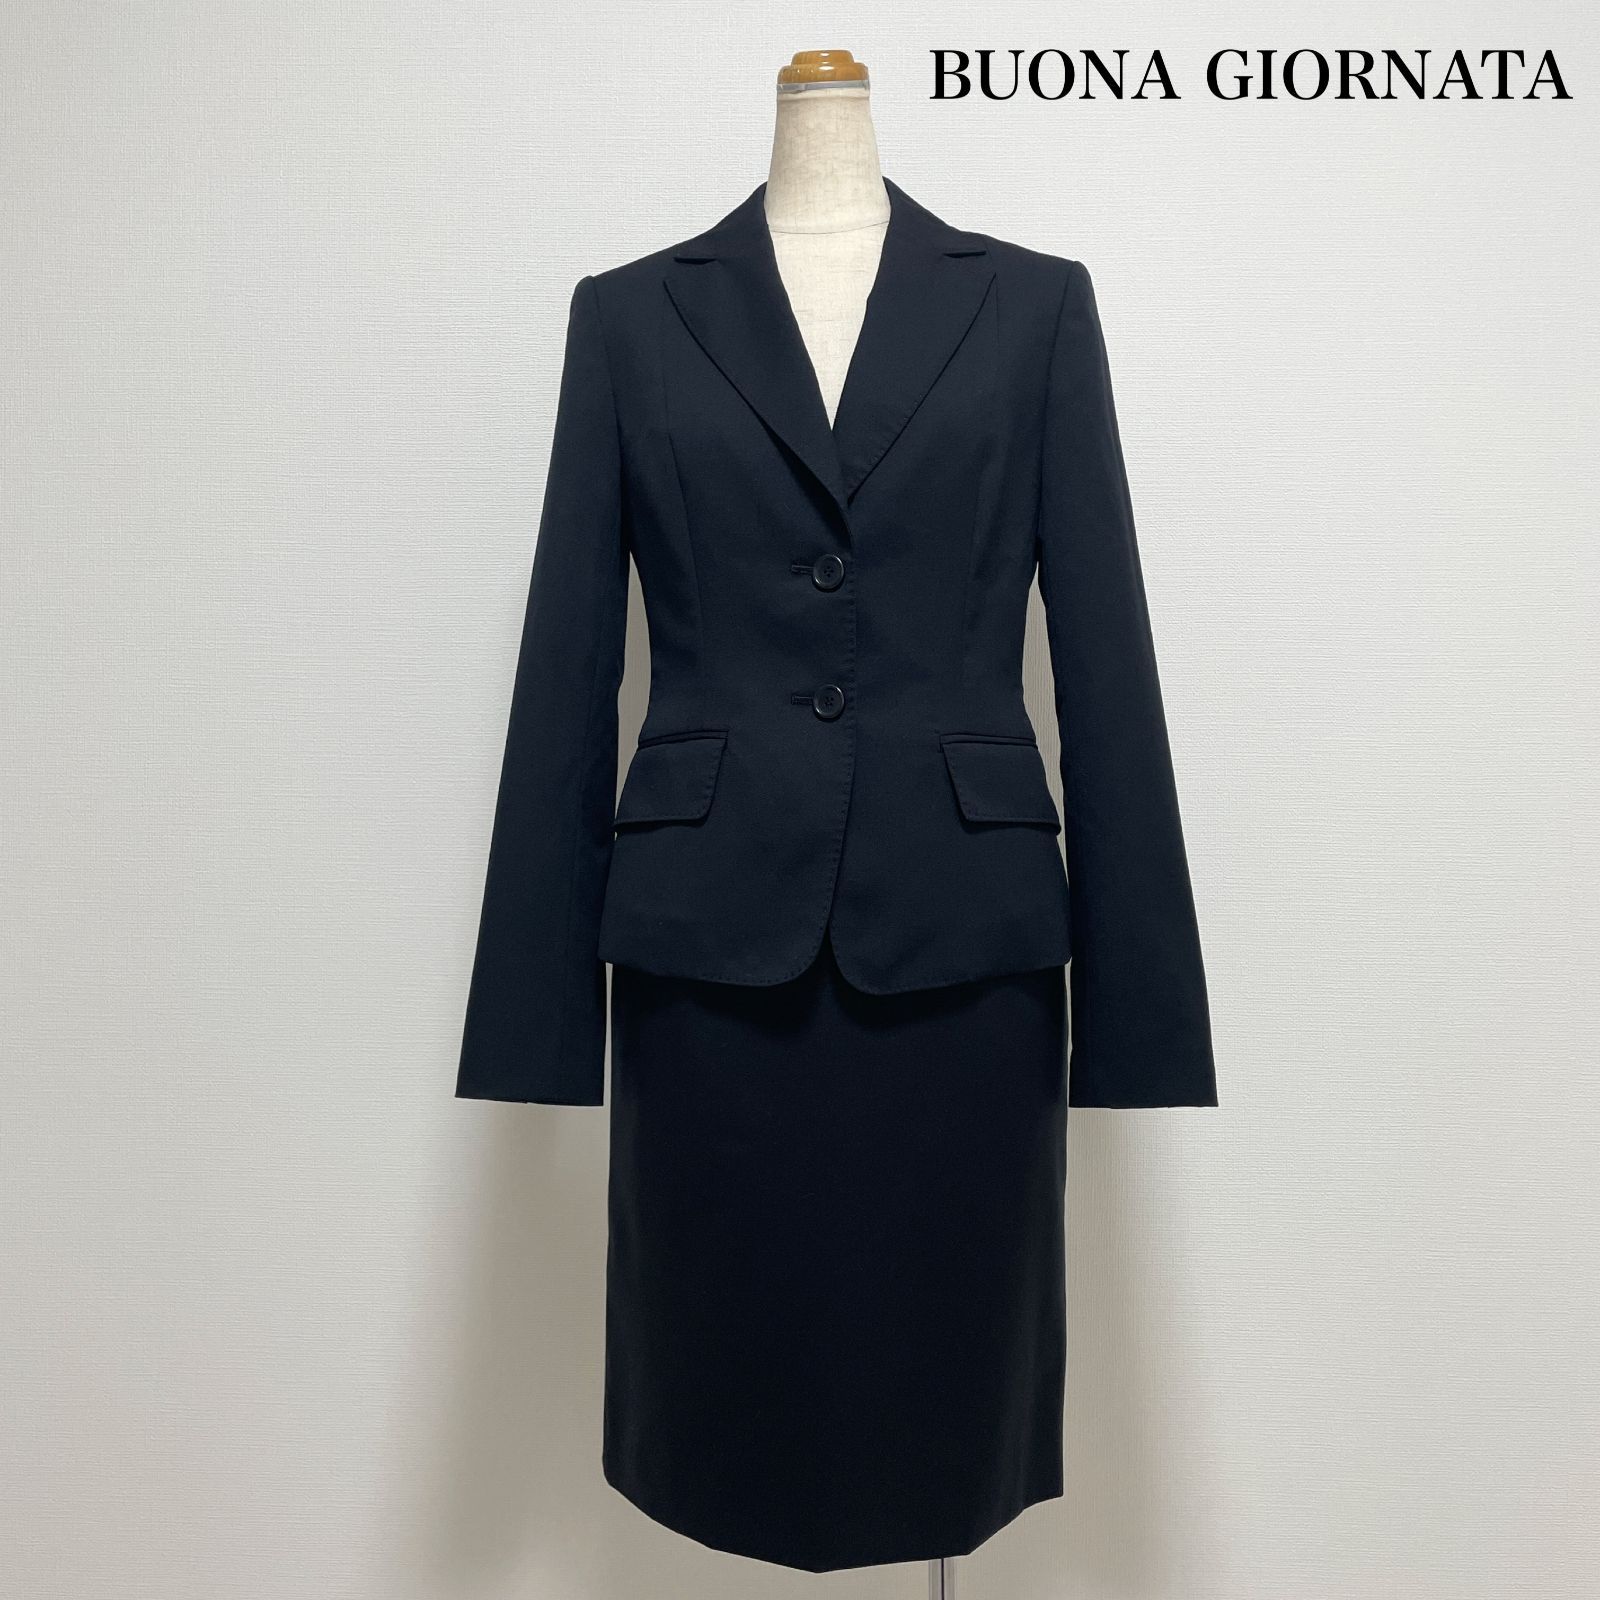 BUONA GIORNATA ボナジョルナータ スカートスーツ ジャケット